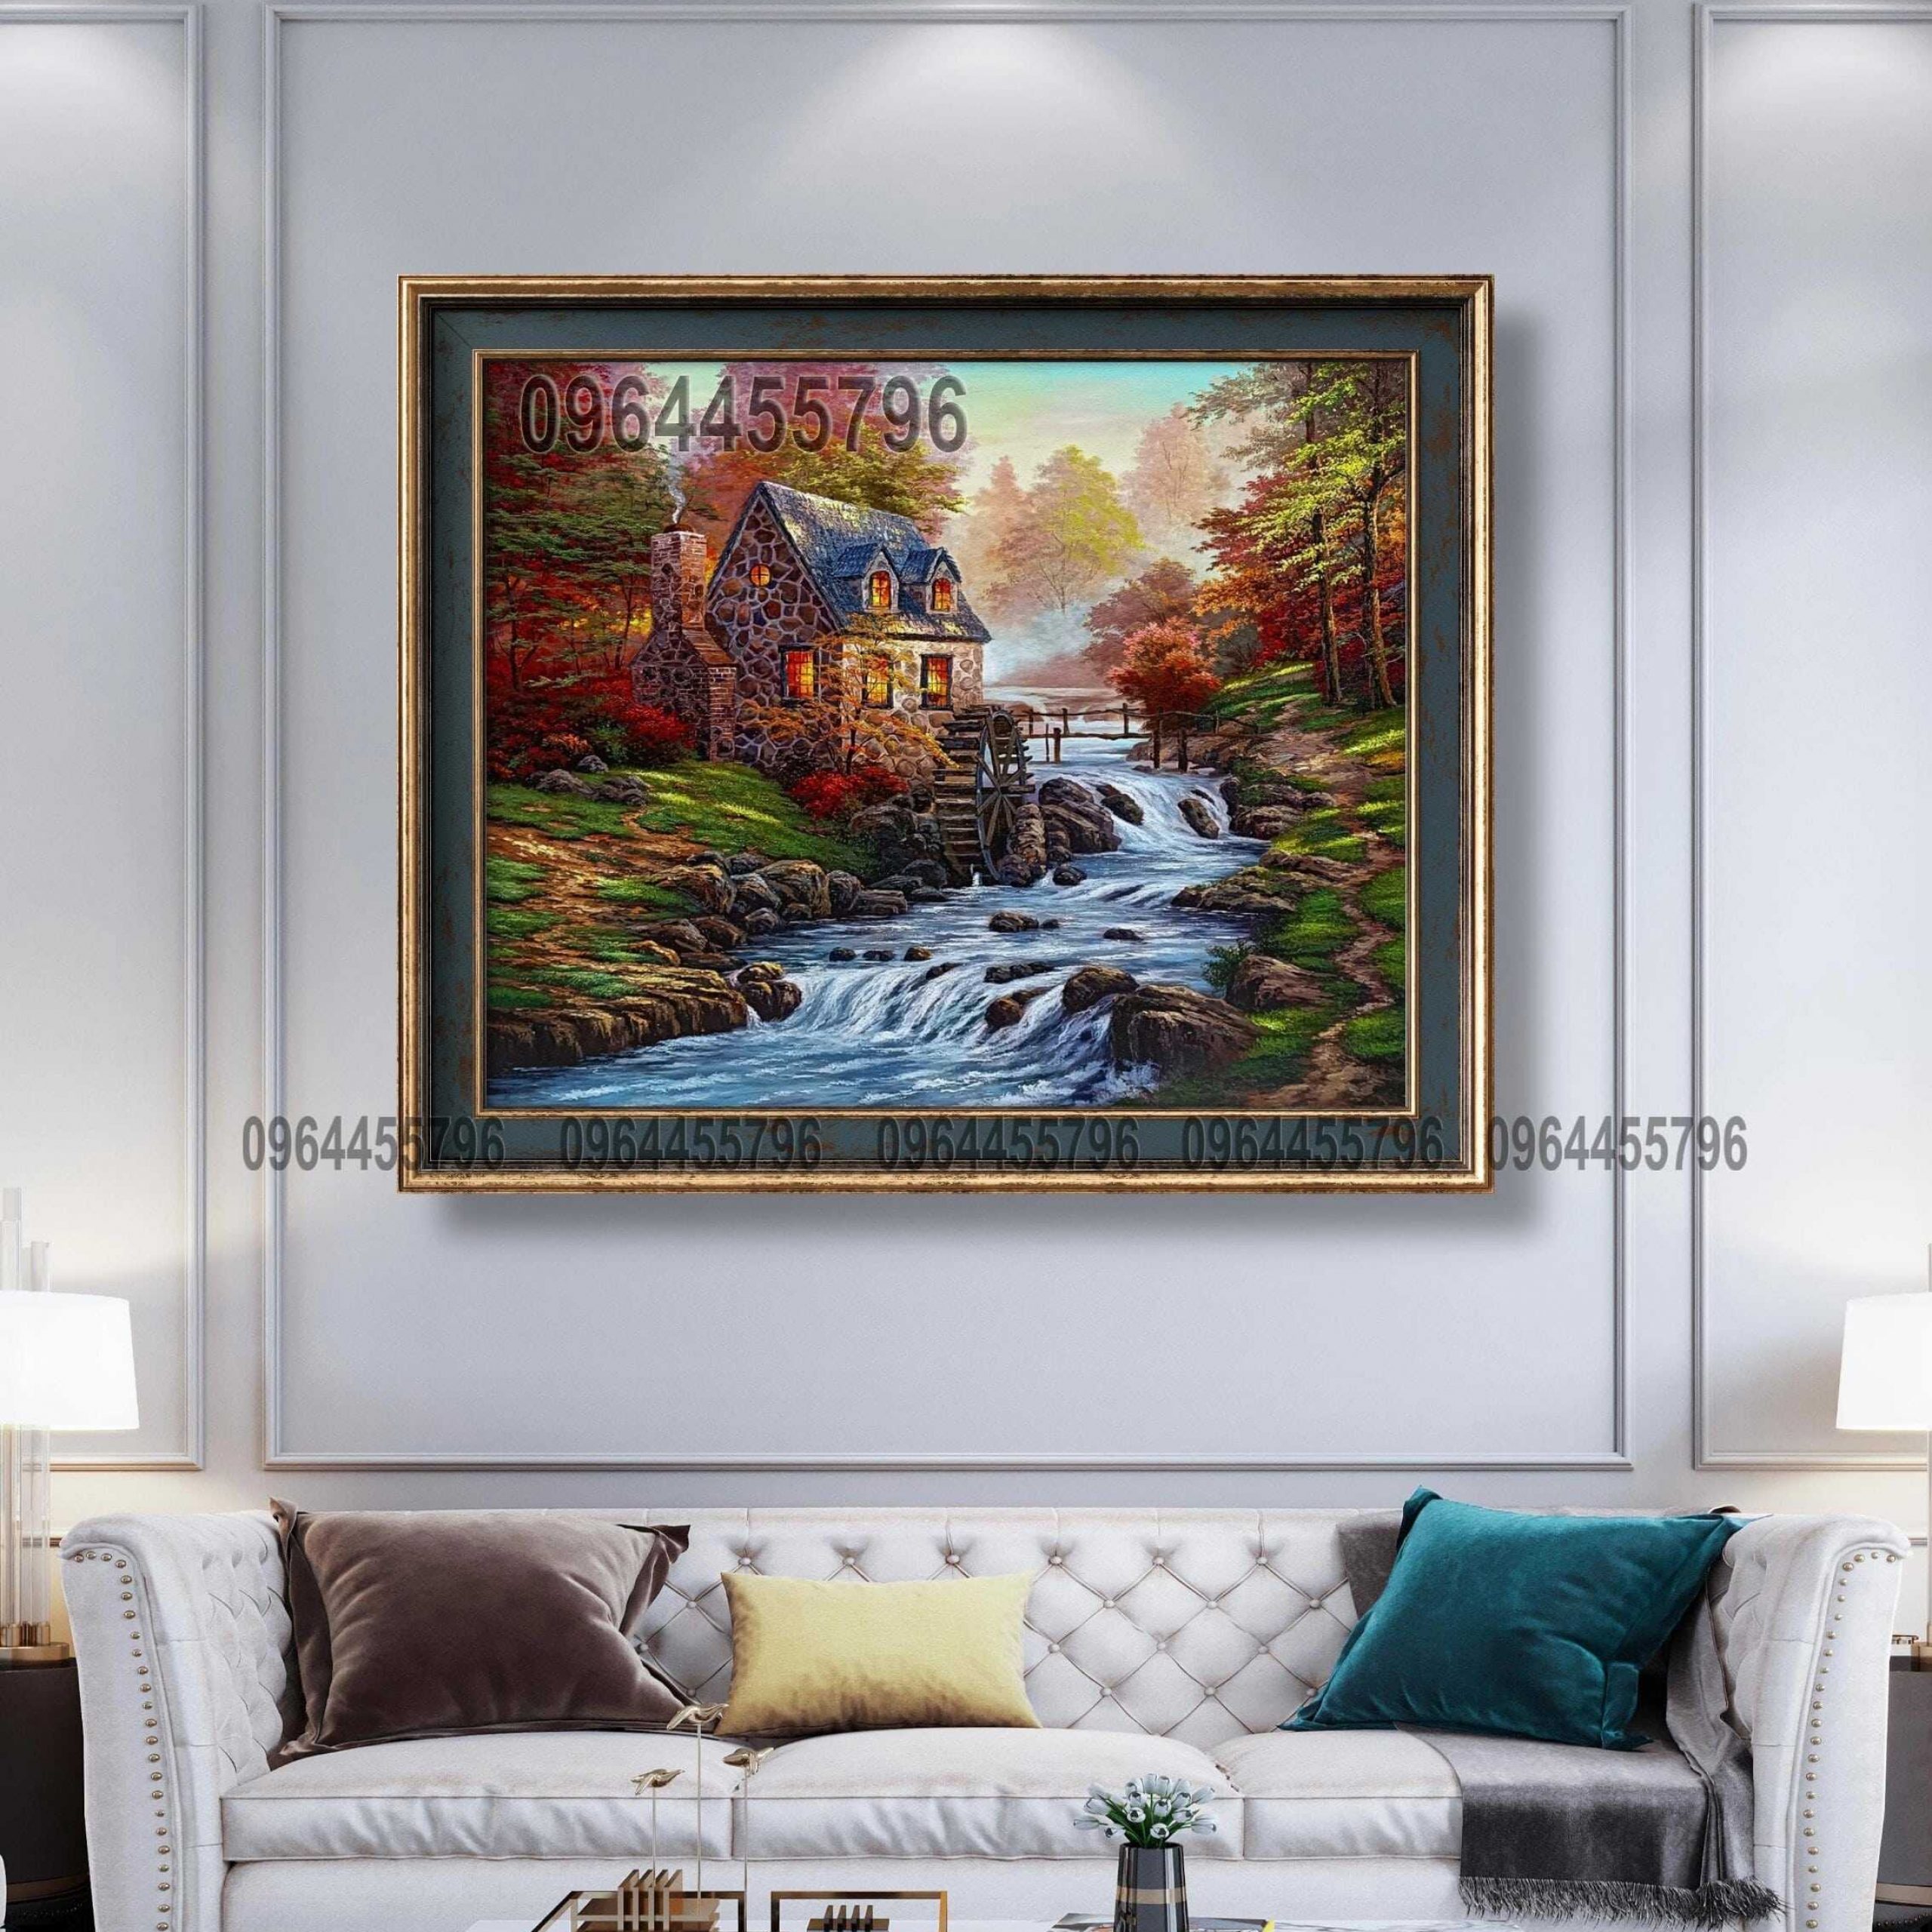 tranh treo tường phòng khách khổ lớn tranh sơn dầu vẽ tay tranh phong cảnh châu âu